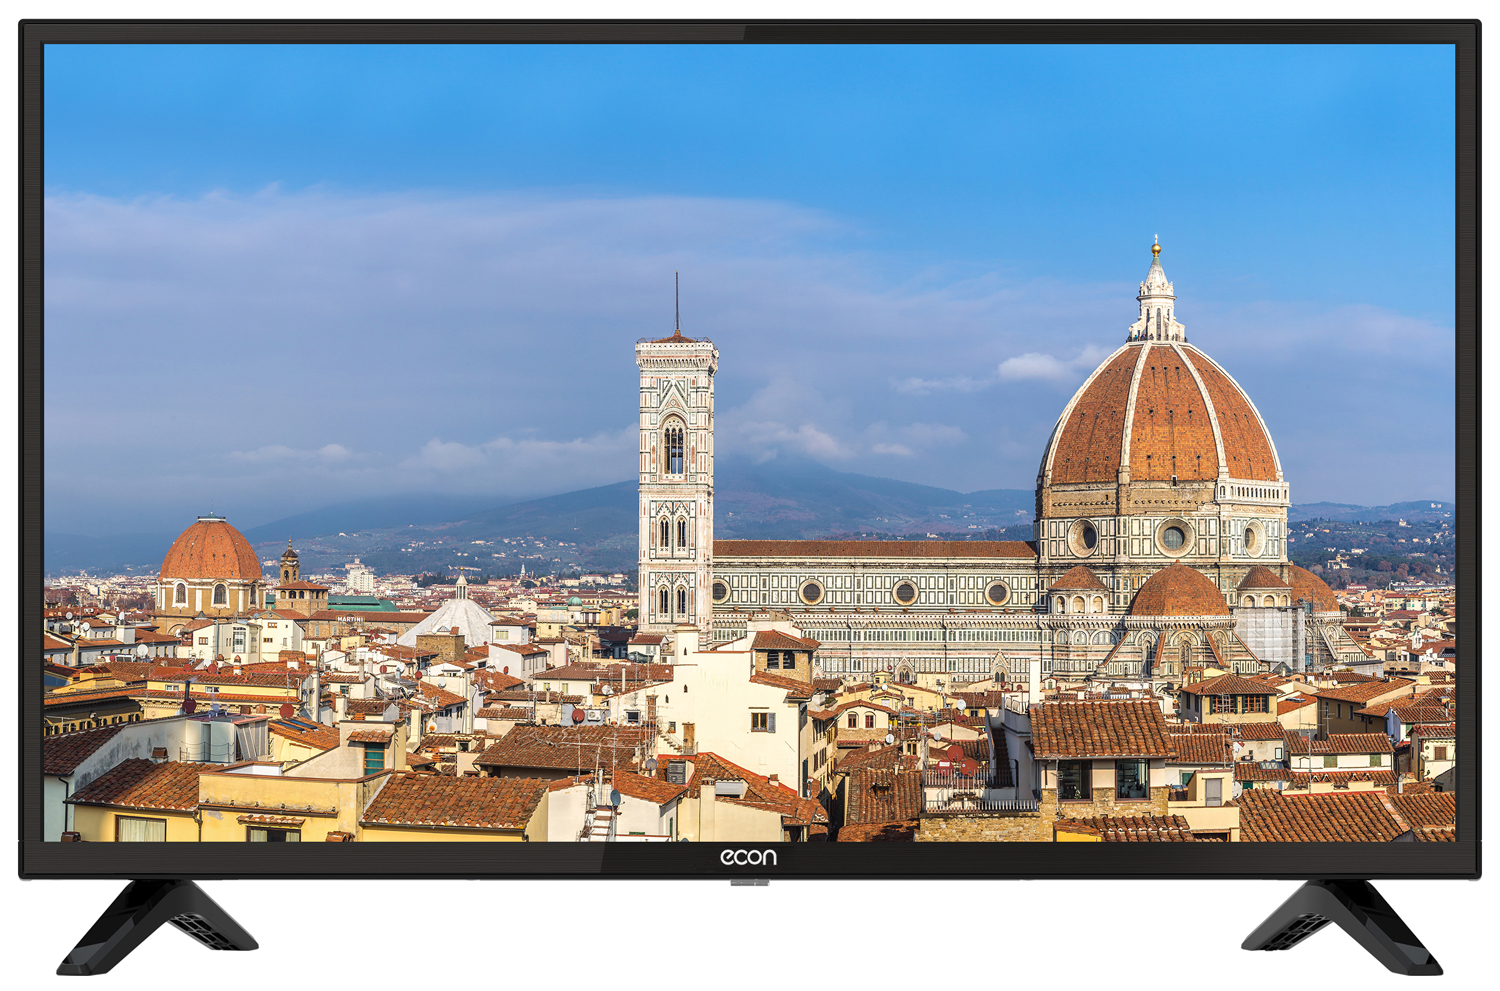 Картинка Smart телевизор ECON EX-24HS001B по разумной цене купить в интернет магазине mall.su